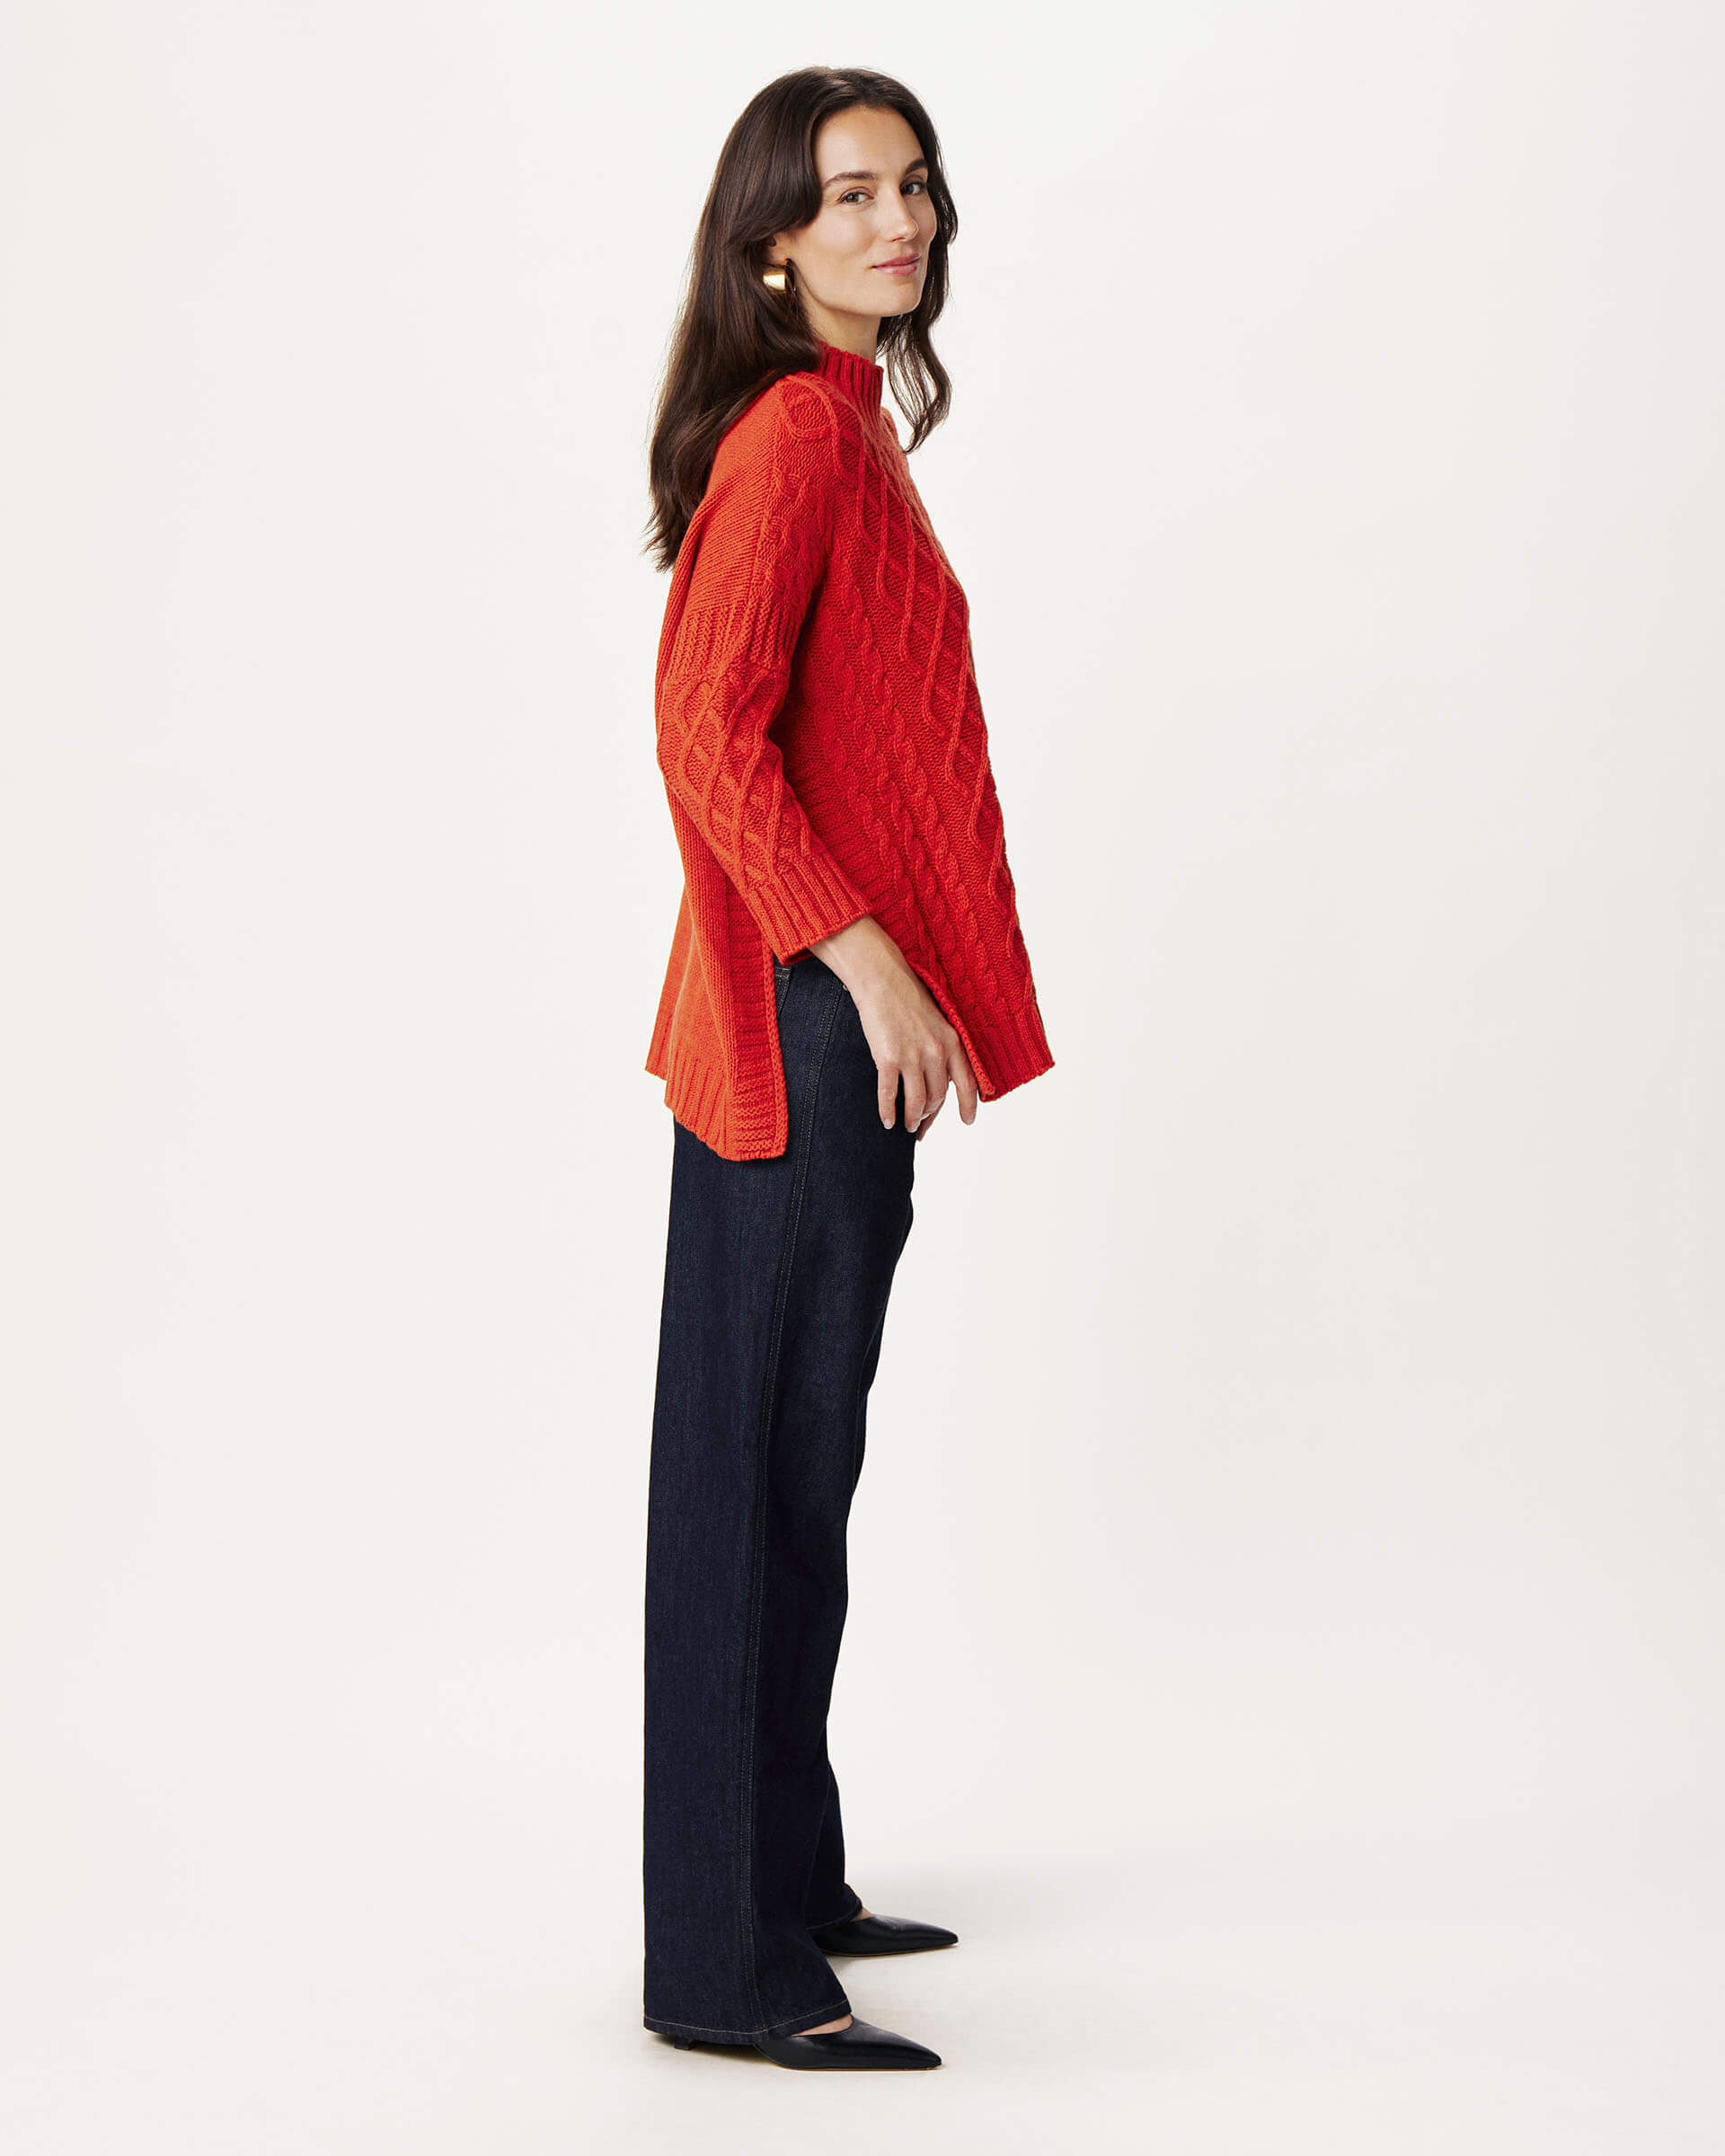 profile of woman wearing Mersea lisbon red sweater